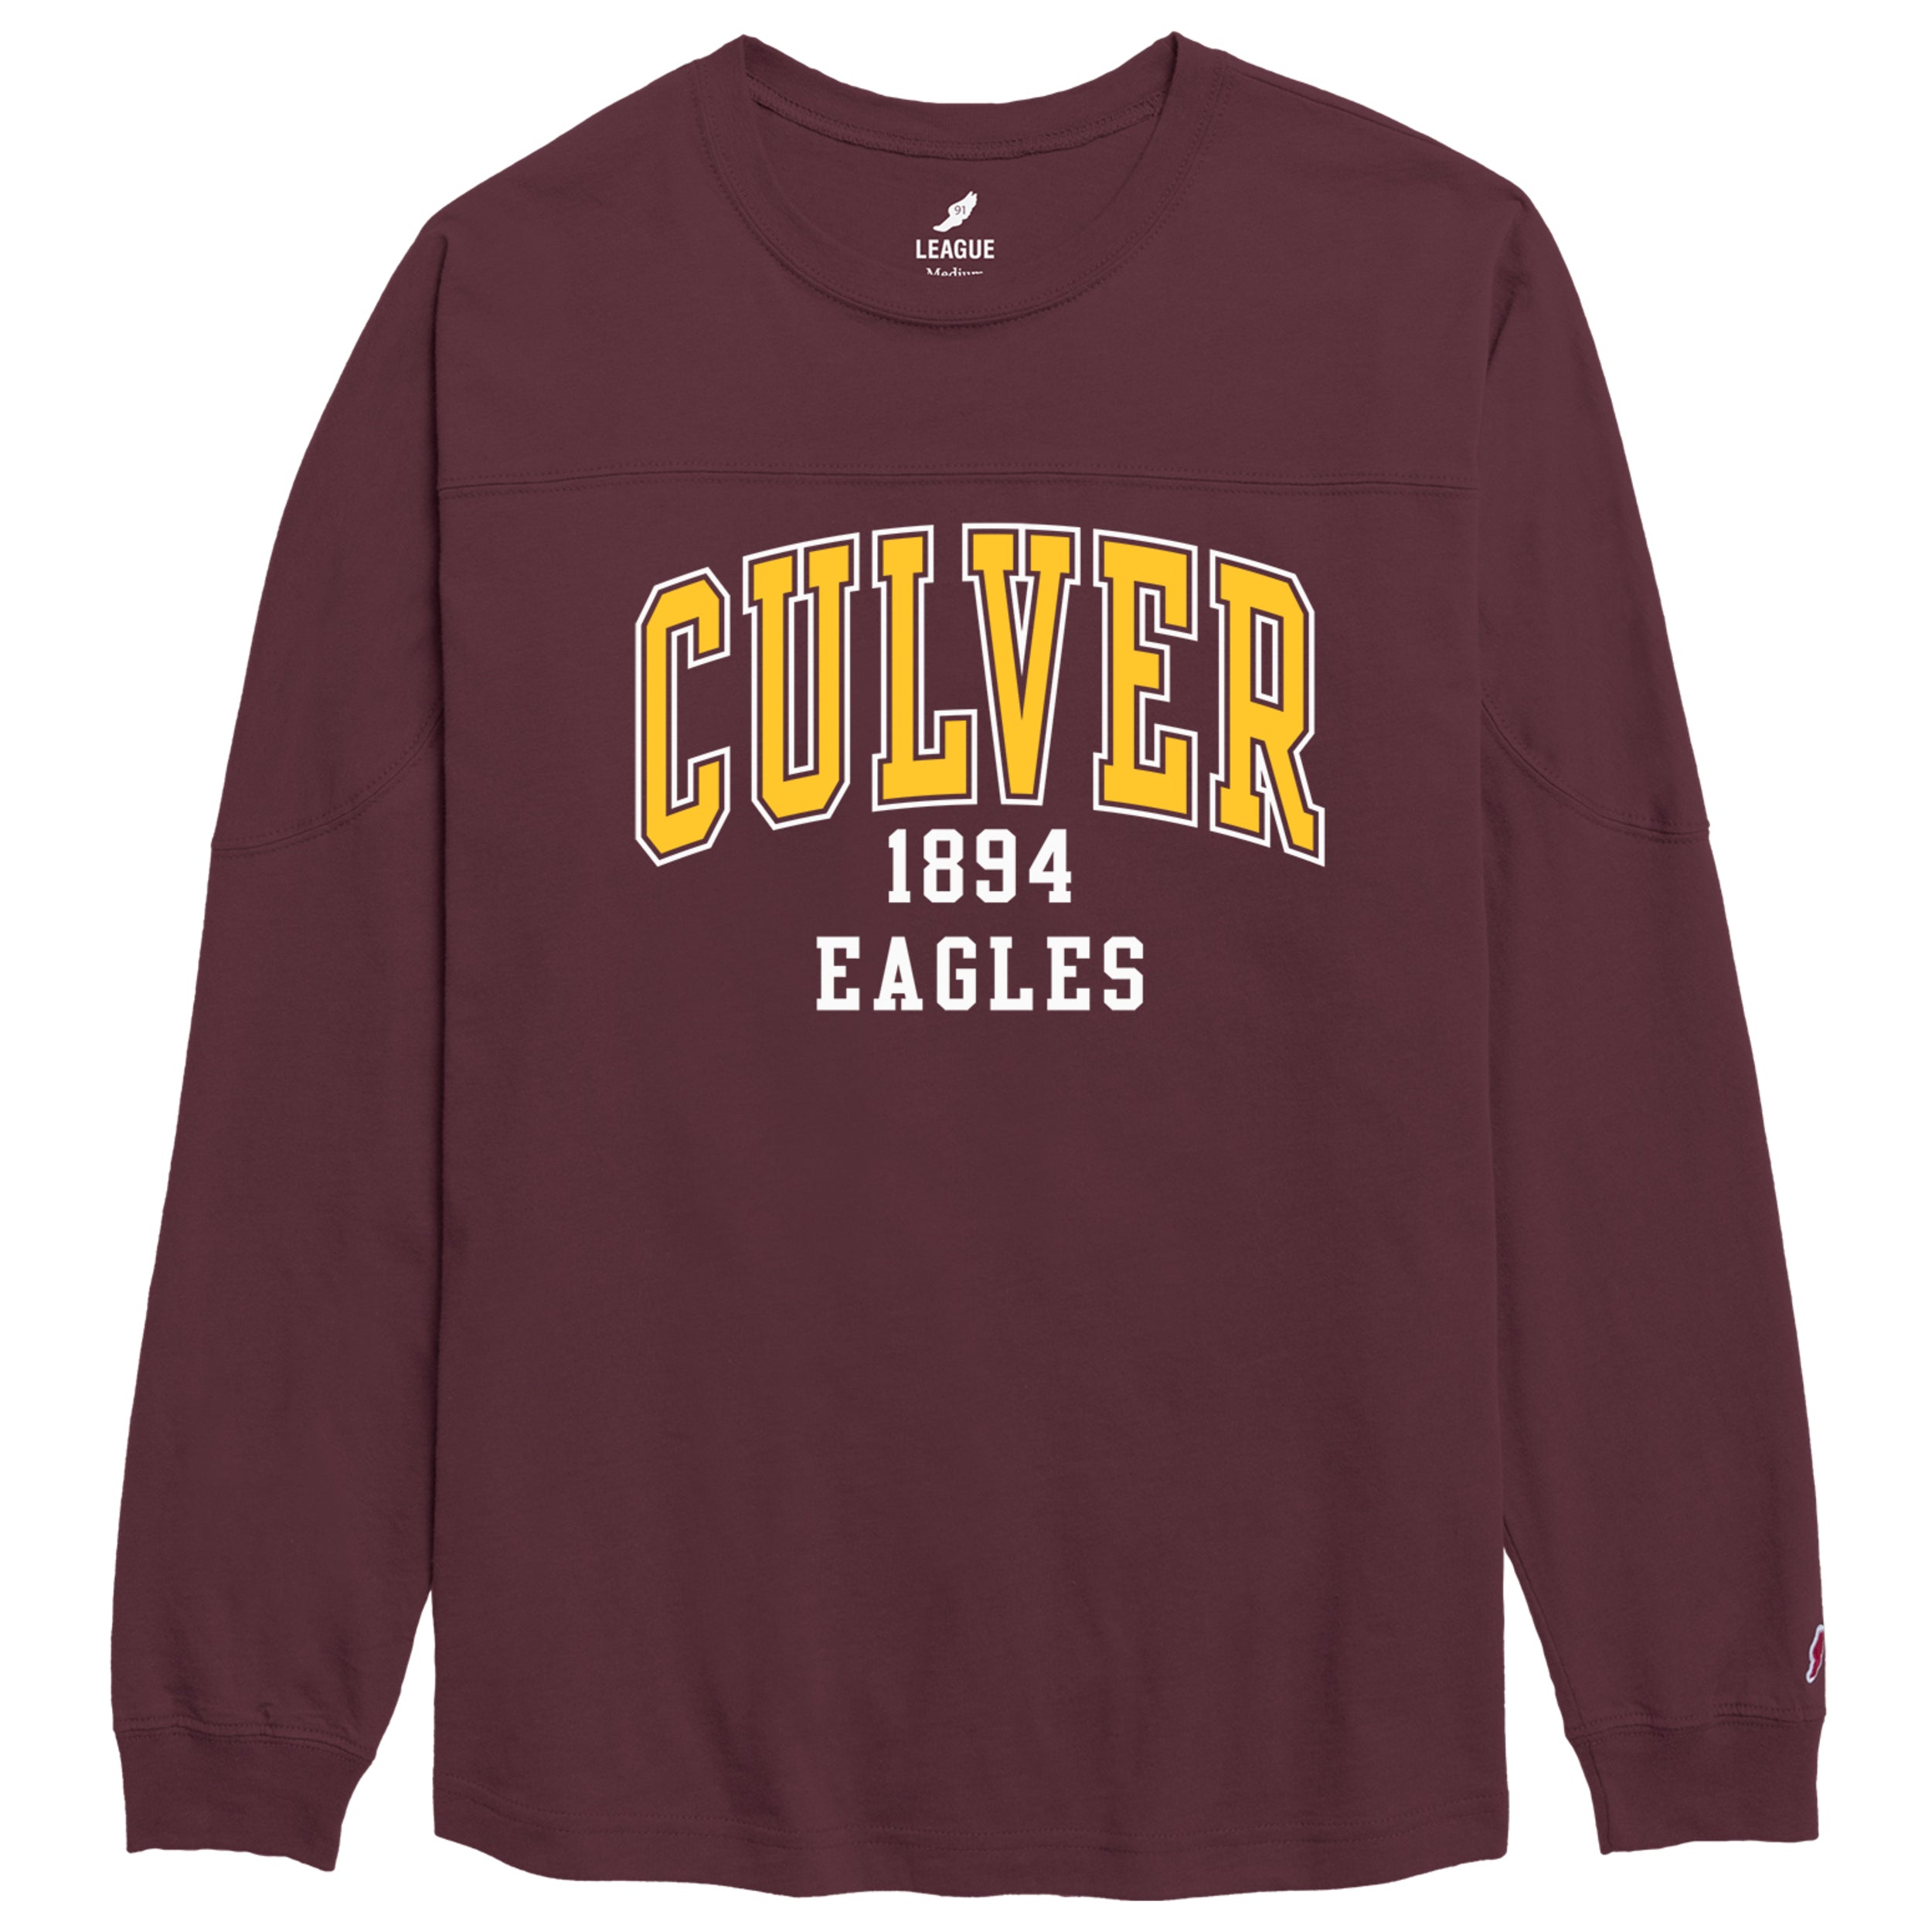 Culver Eagles Throwback Long Sleeve Tee - Maroon